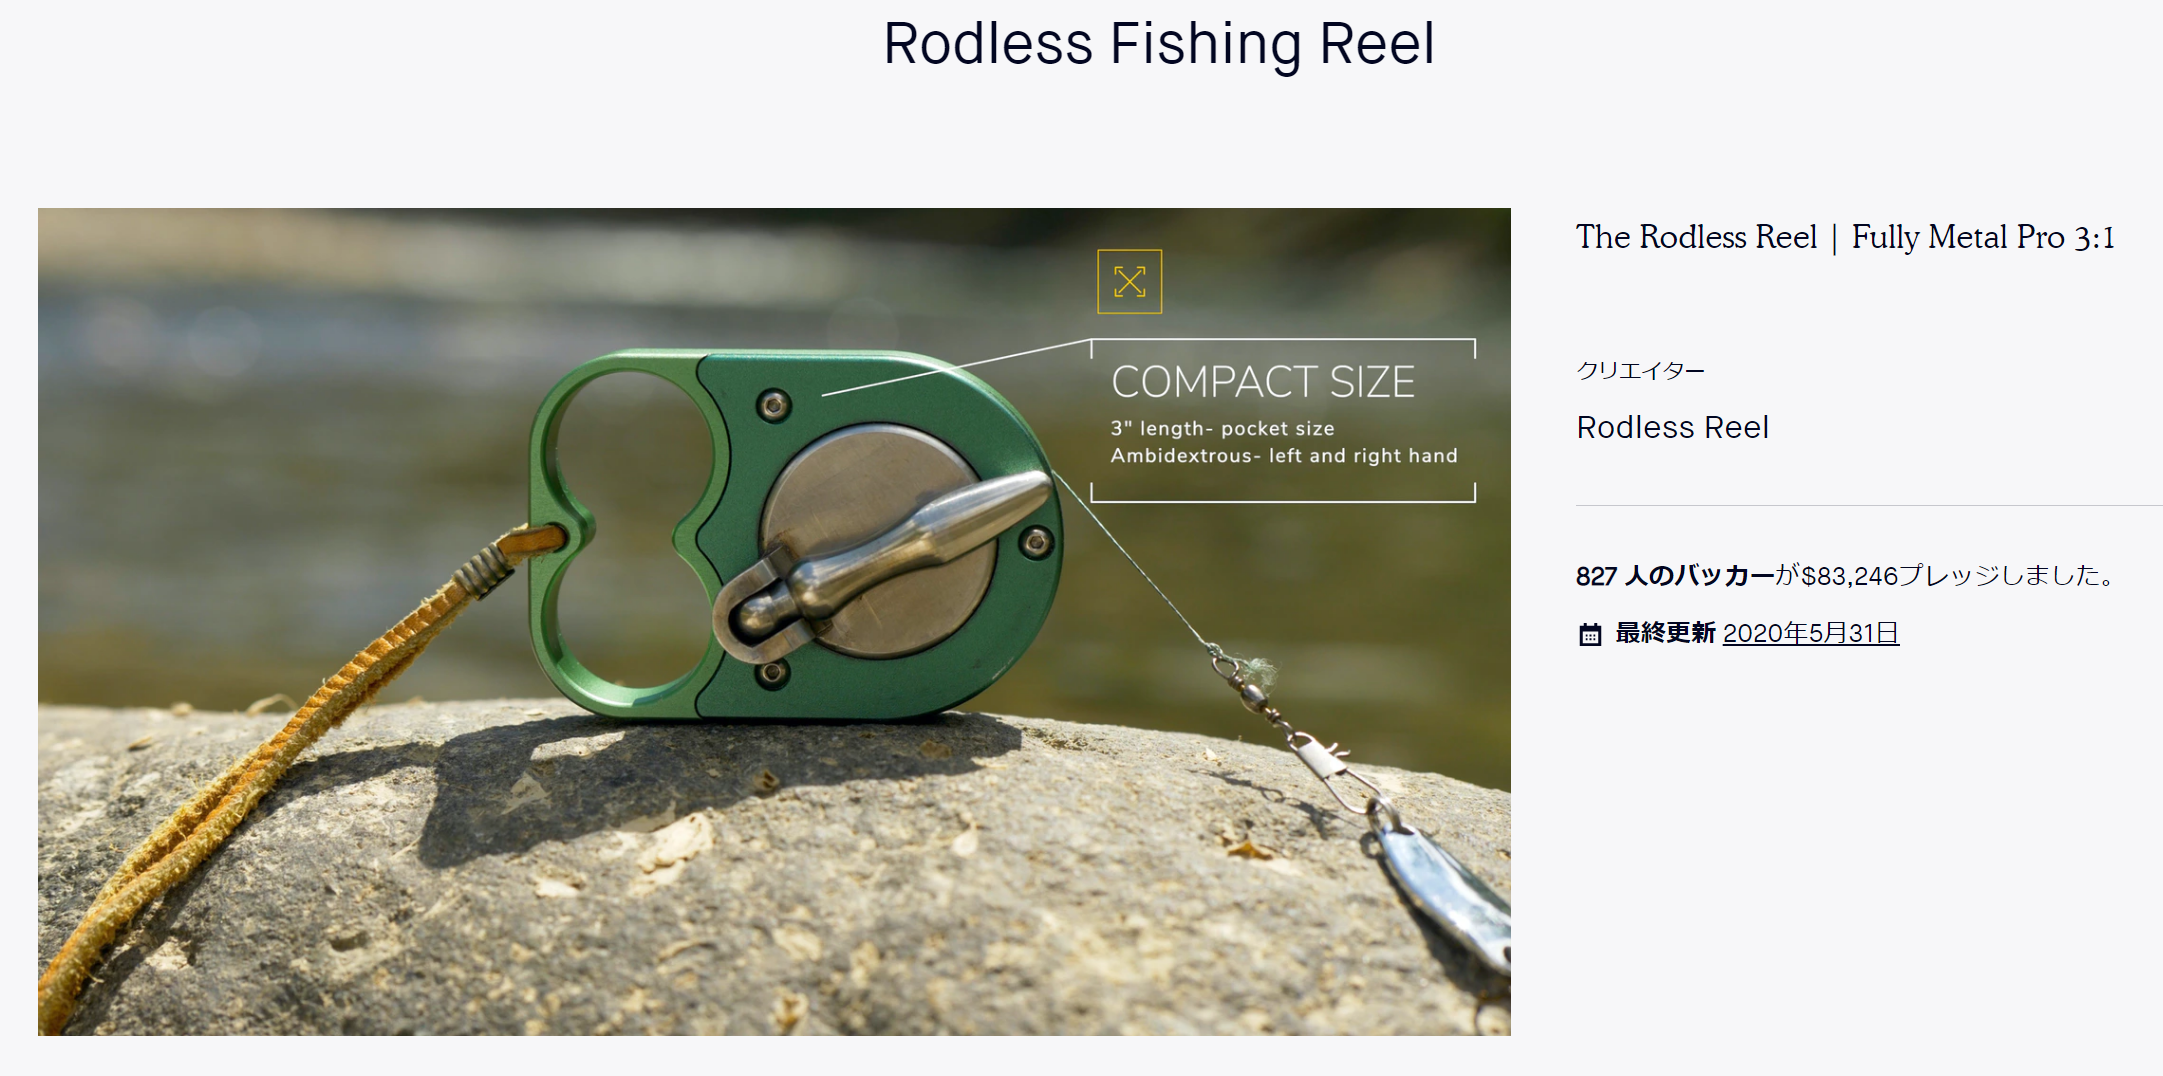 ロッドレスリール Rodless Reel Pro 支援プロジェクト完了 いよいよ生産!?